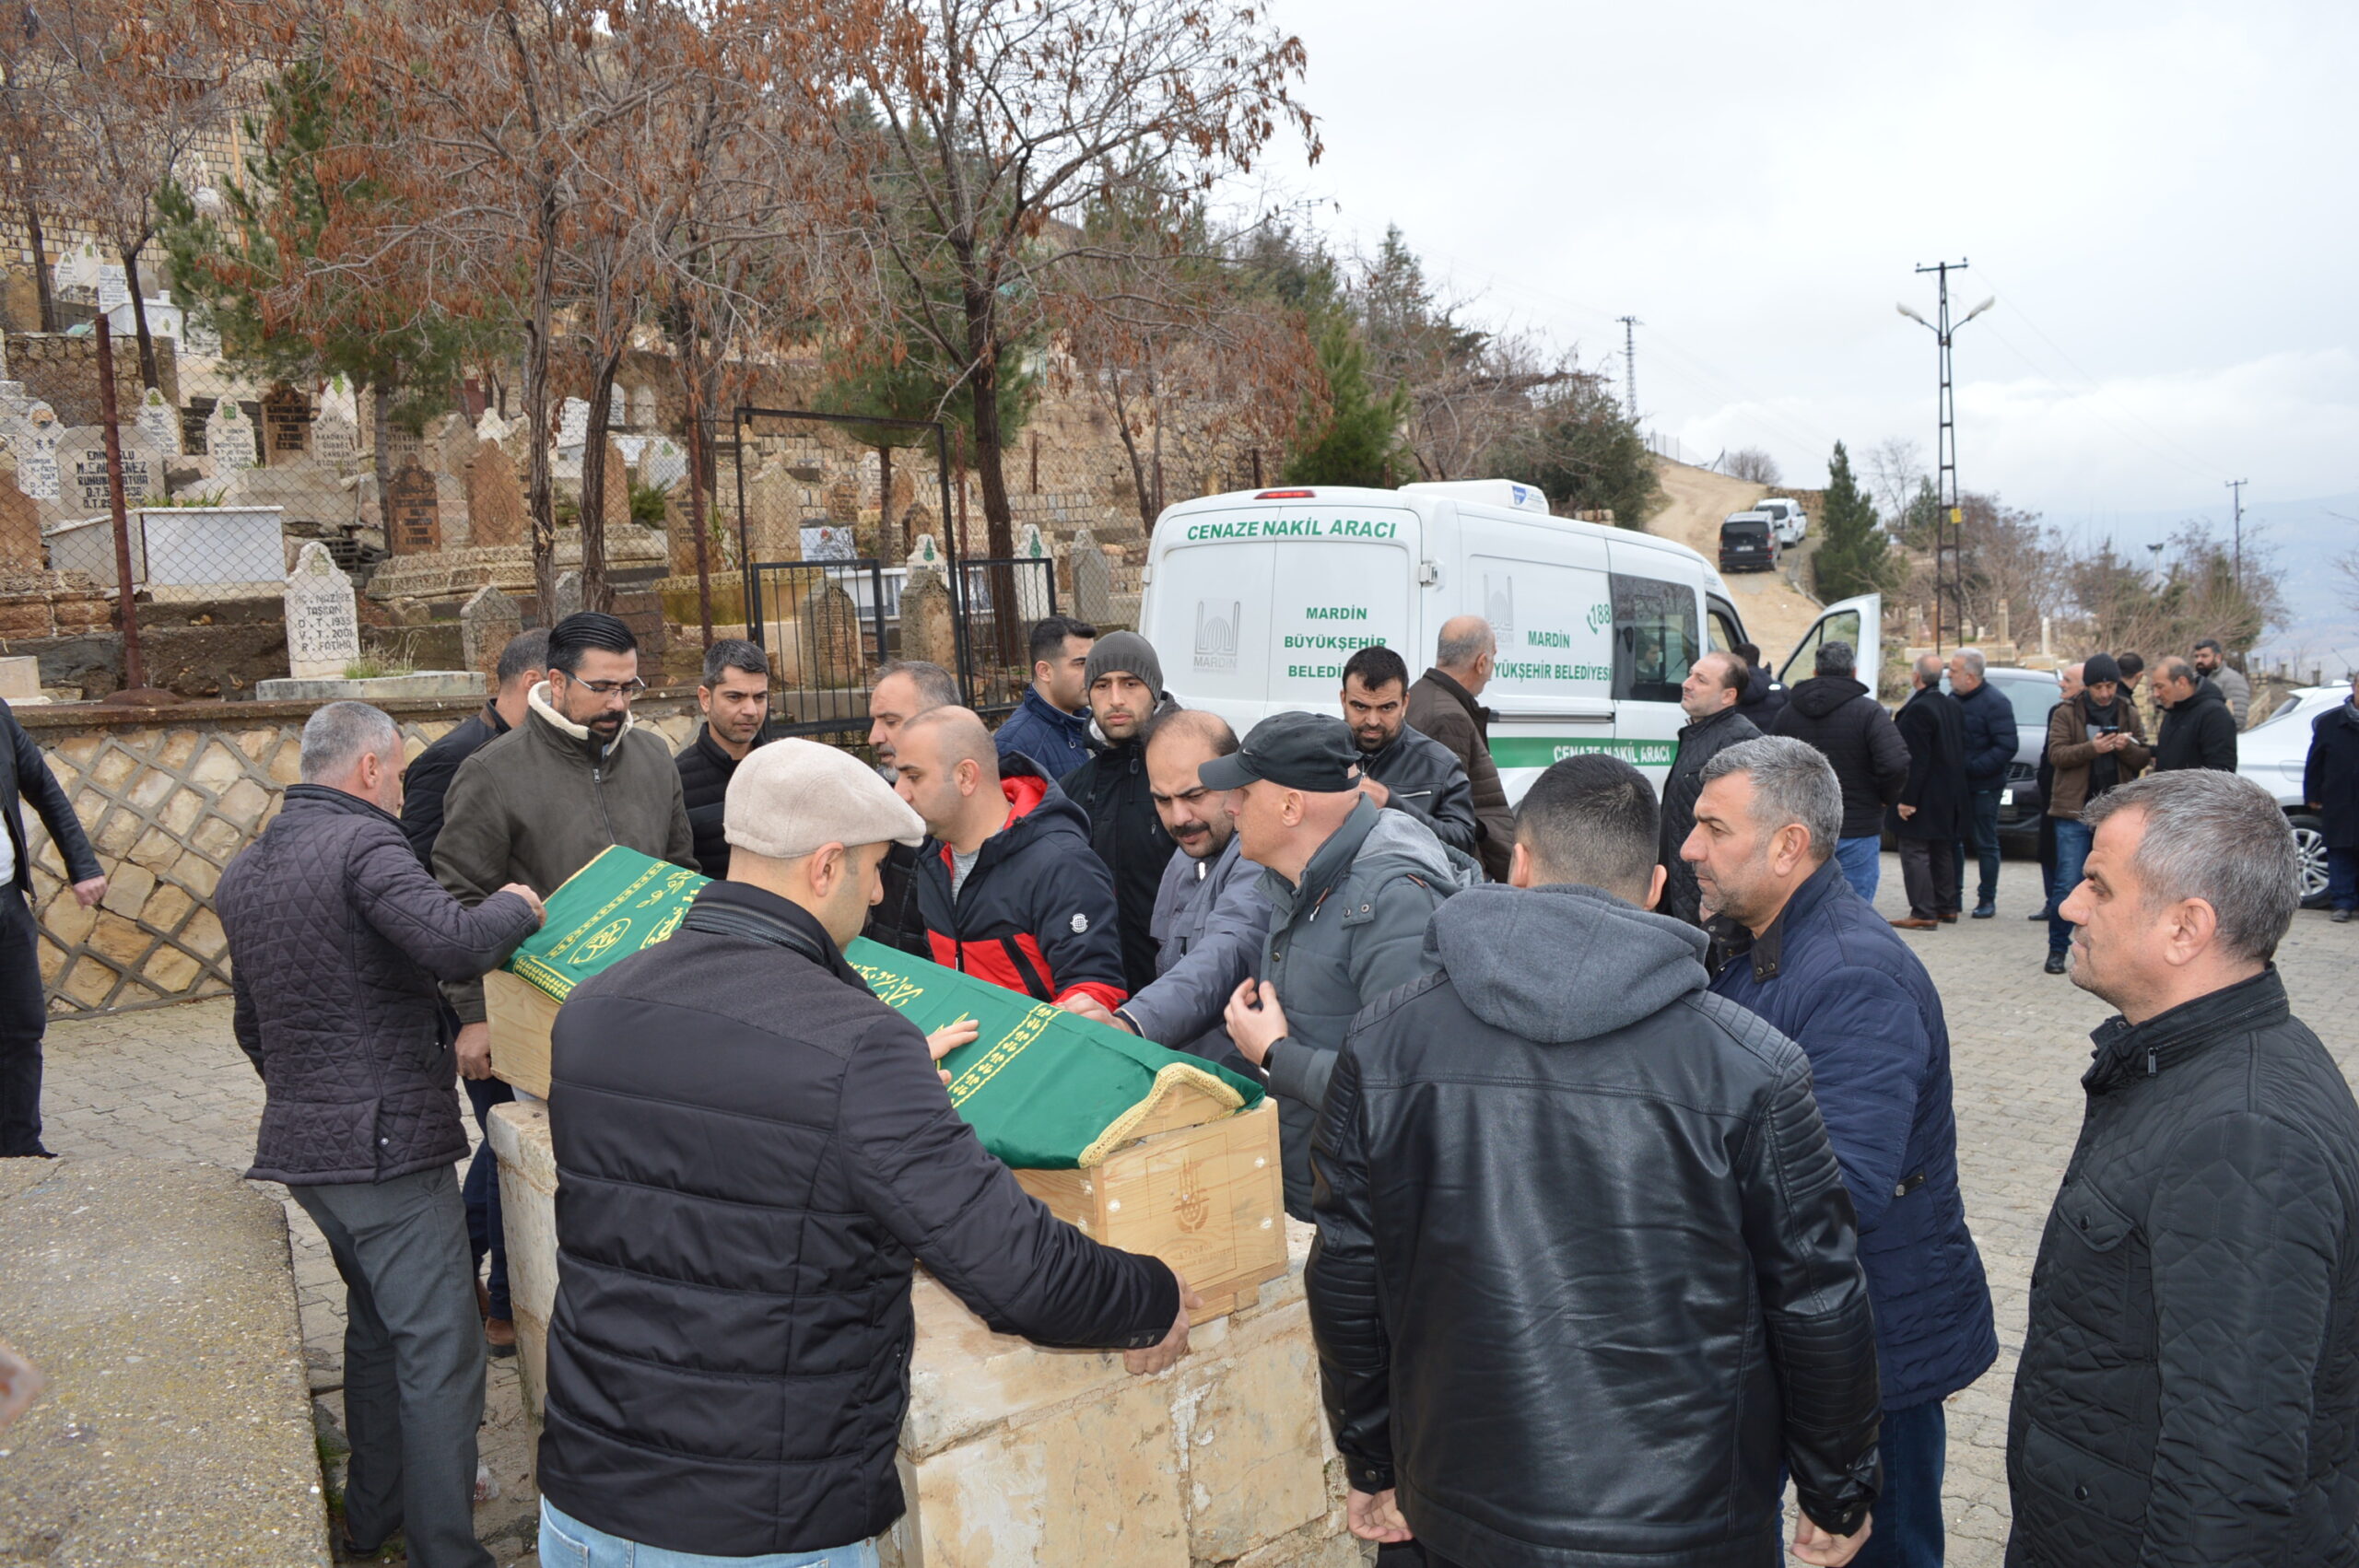 Mersin’deki otobüs kazasında hayatını kaybeden 9 kişiden 6’sı defnedildi.